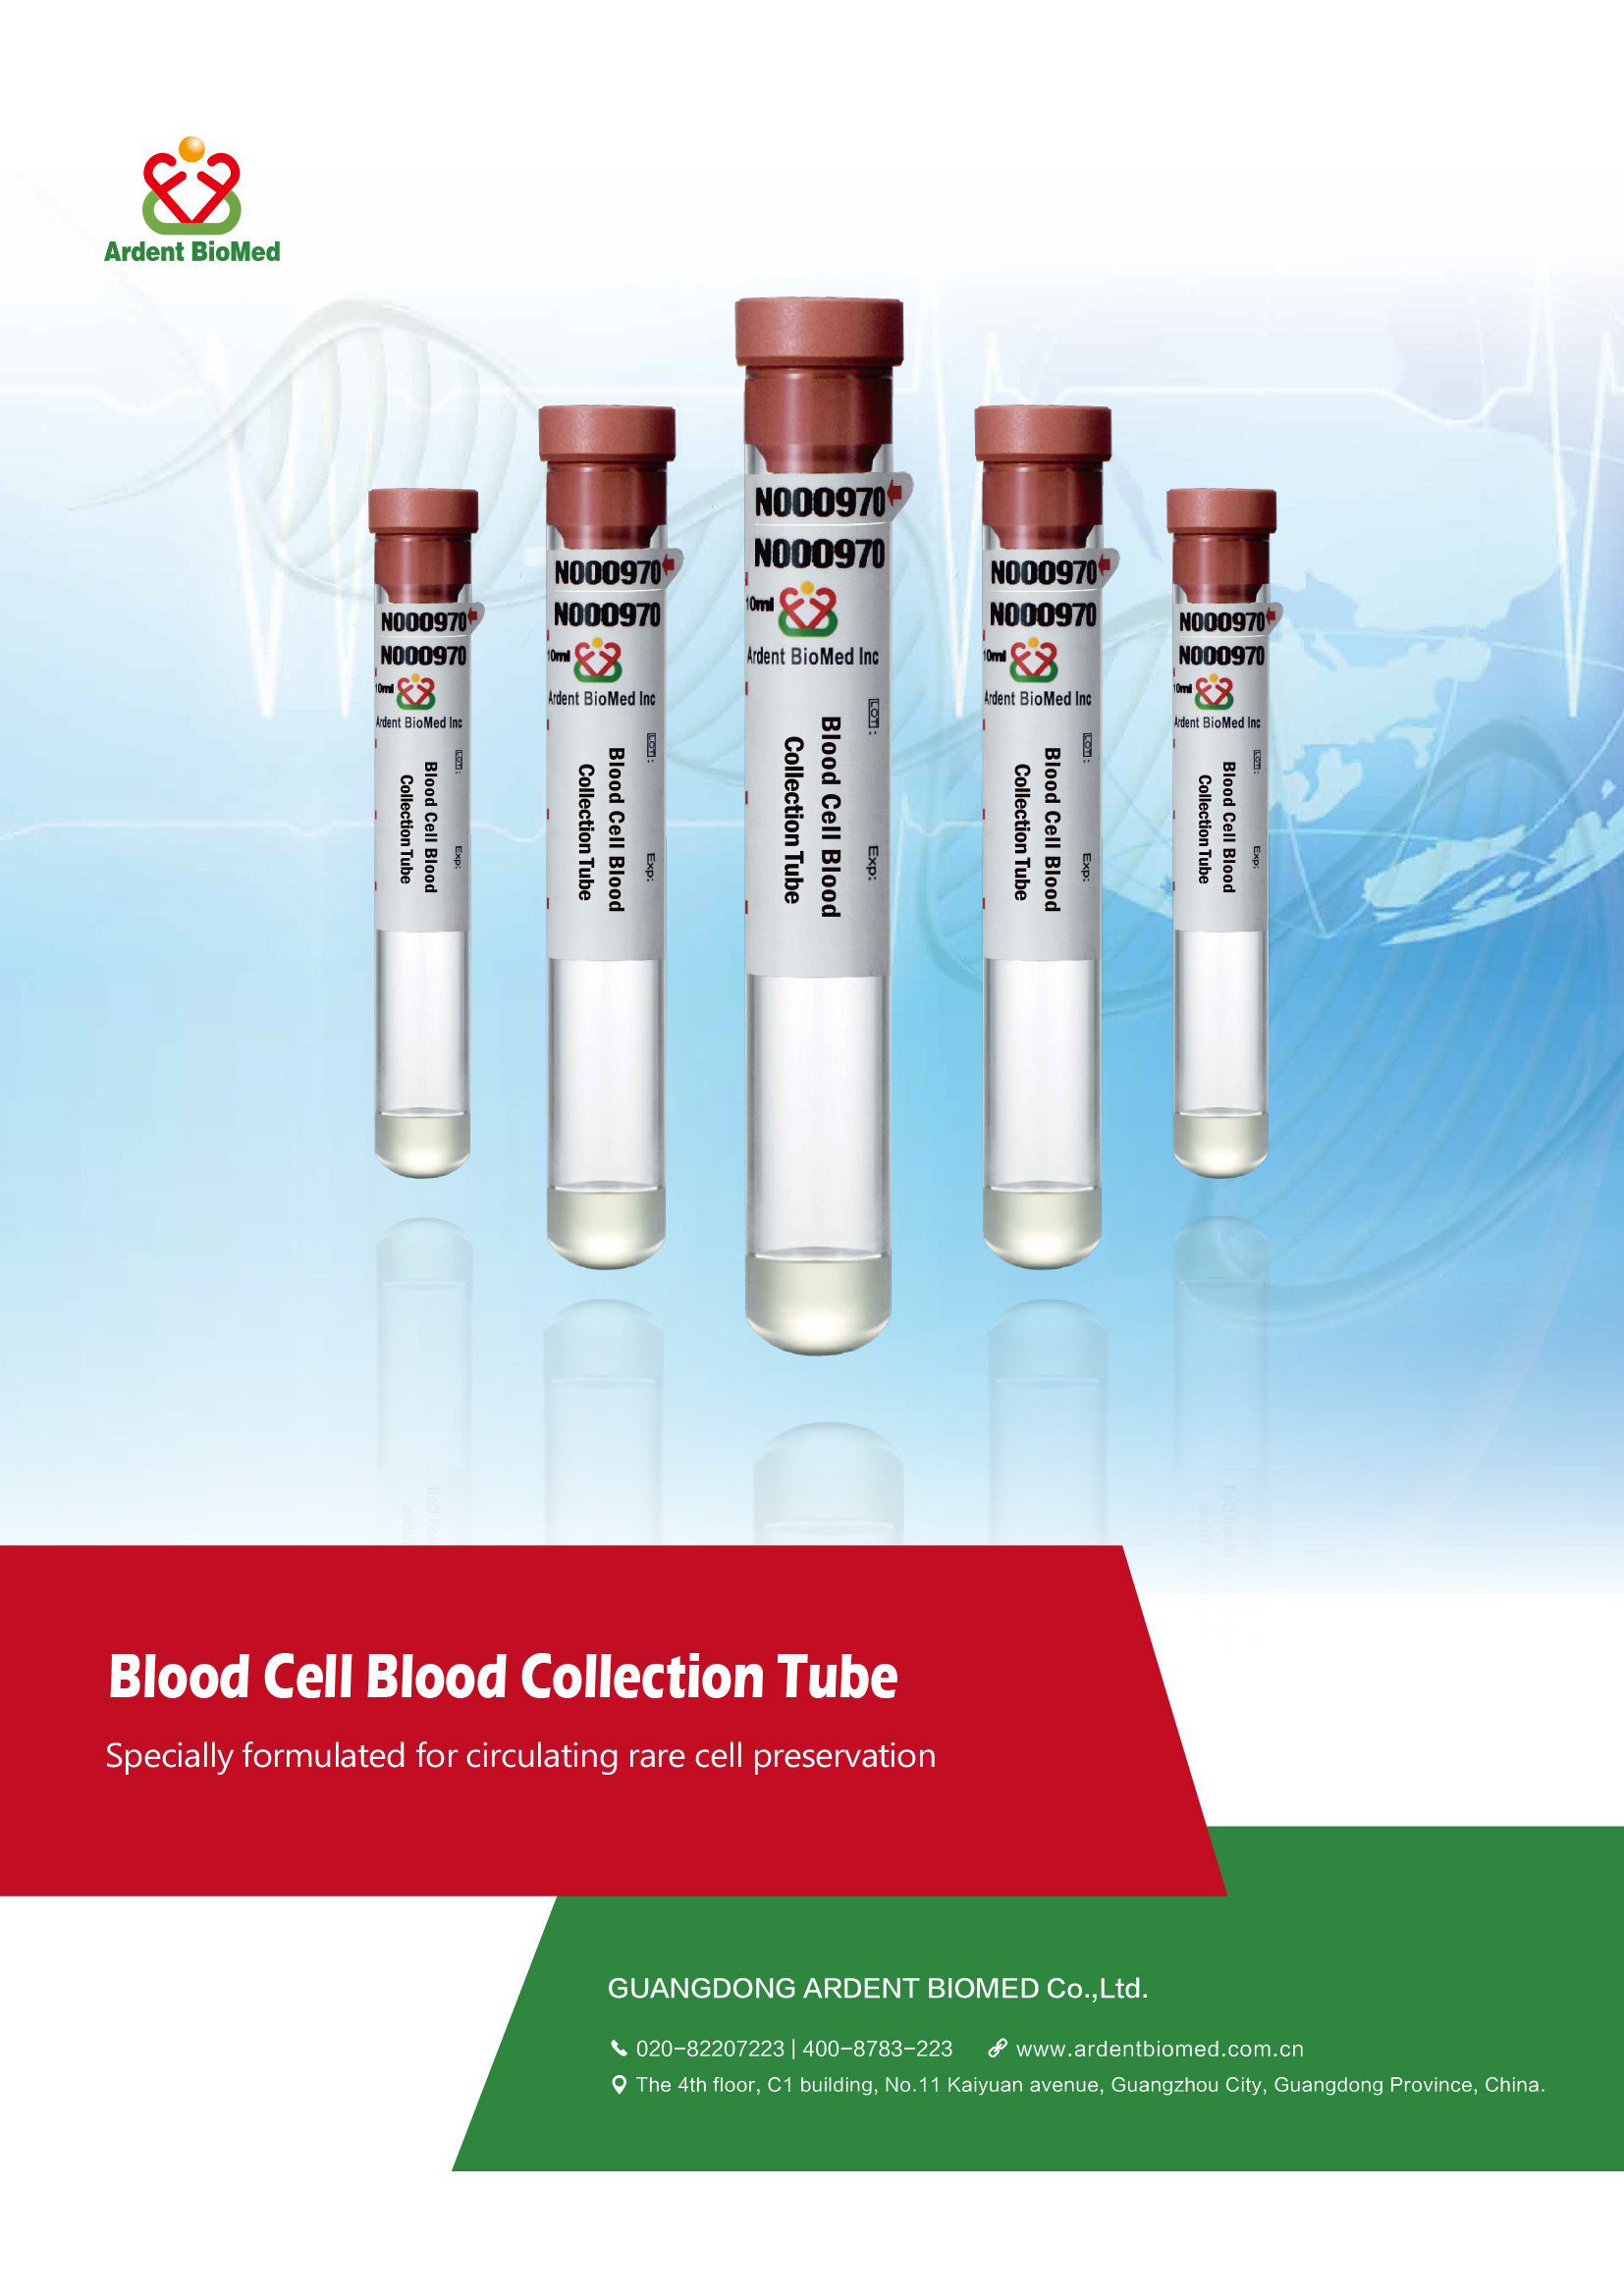 血液白细胞保存管英文版20210329改地址预览-1.jpg